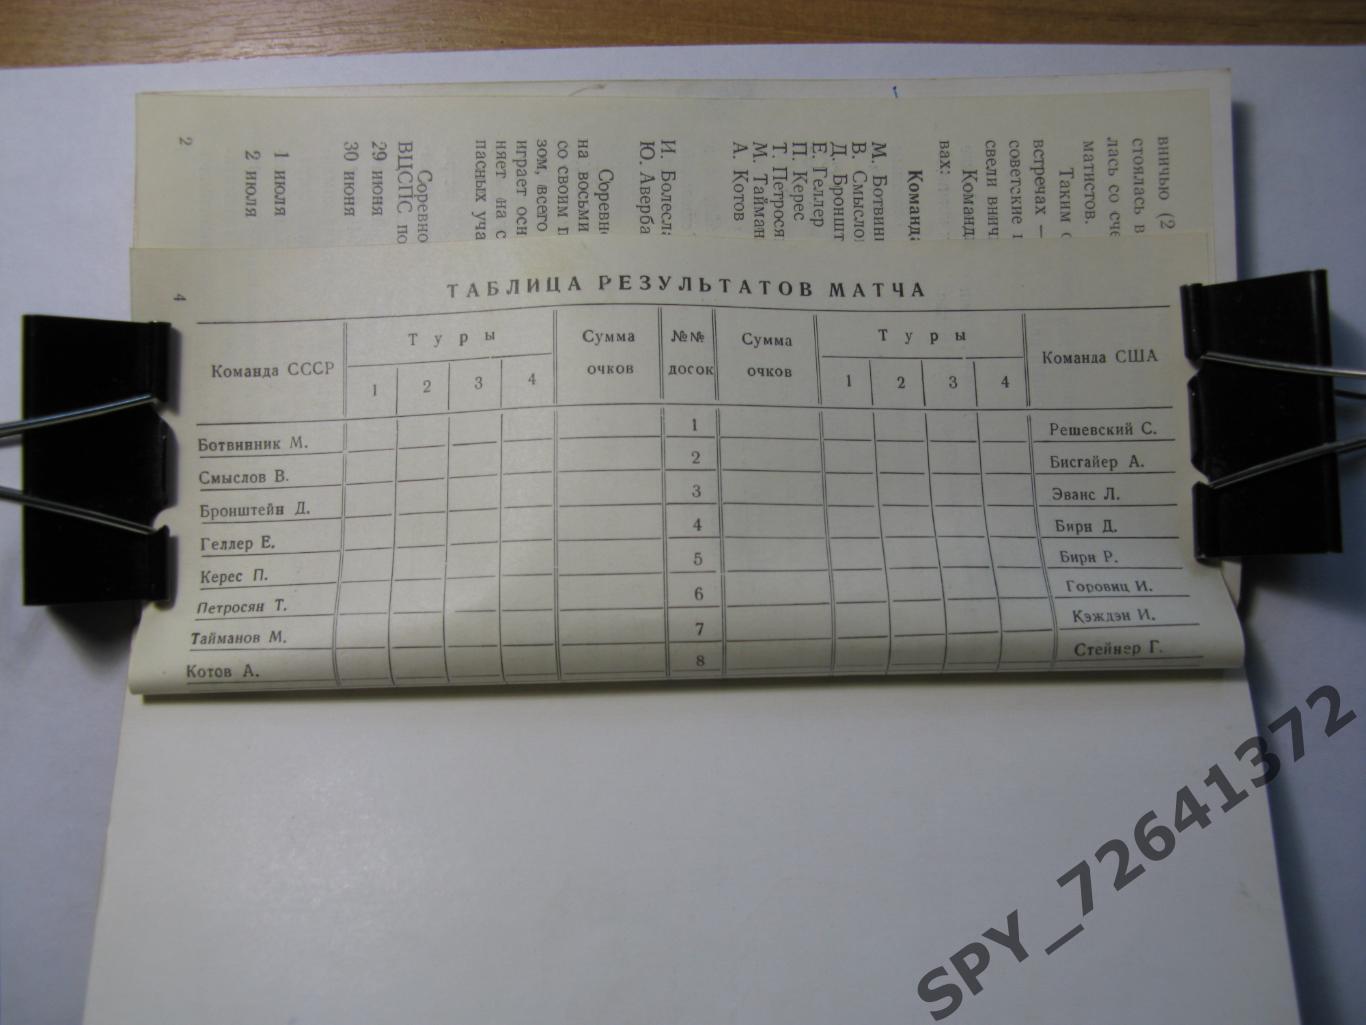 Программа Шахматный матч команд СССР-США 1955 г. автографы Бронштейна и Геллера 4